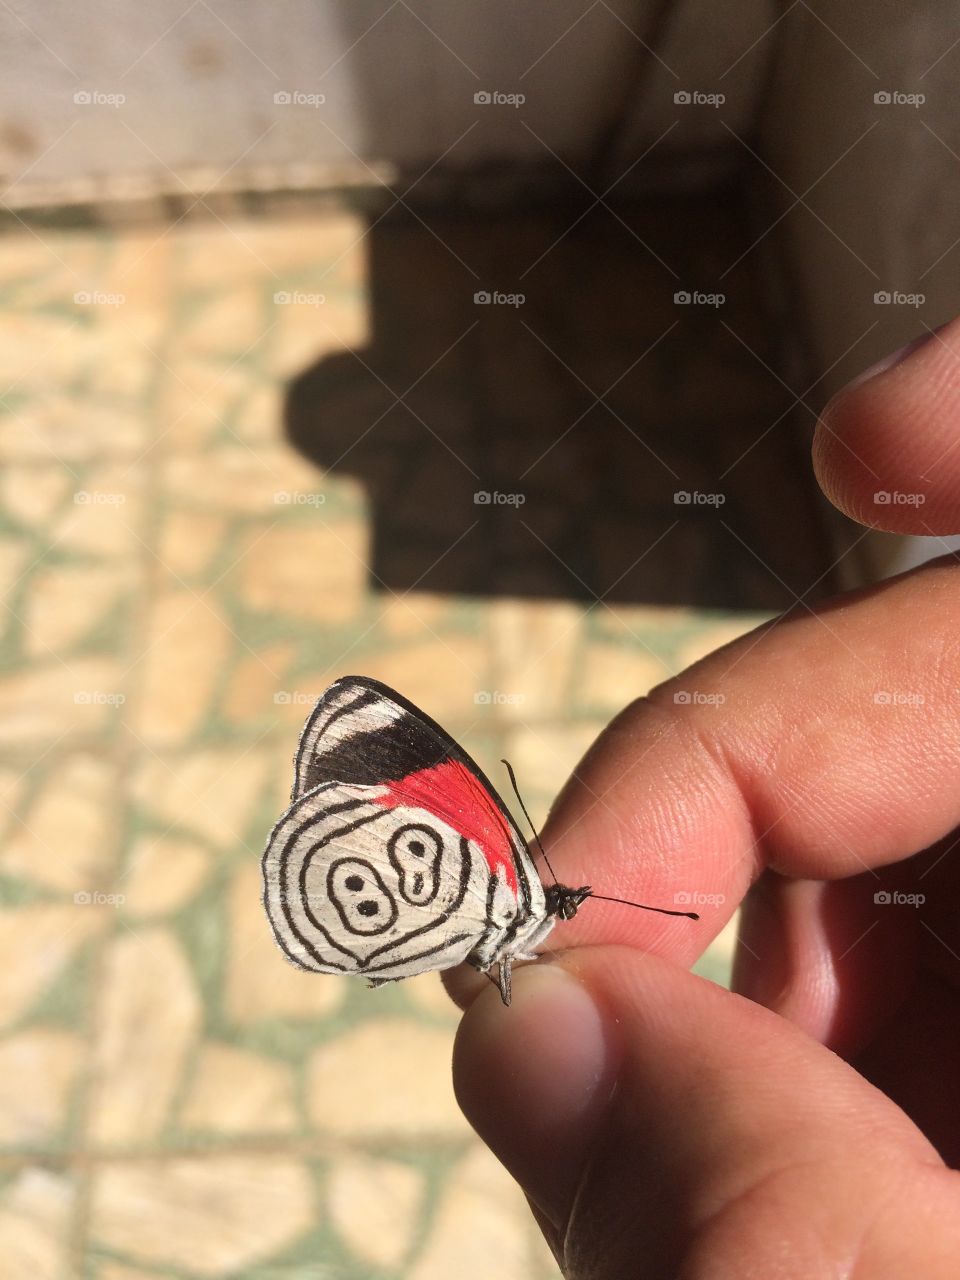 Butterfly 88 - São Paulo - Brazil 